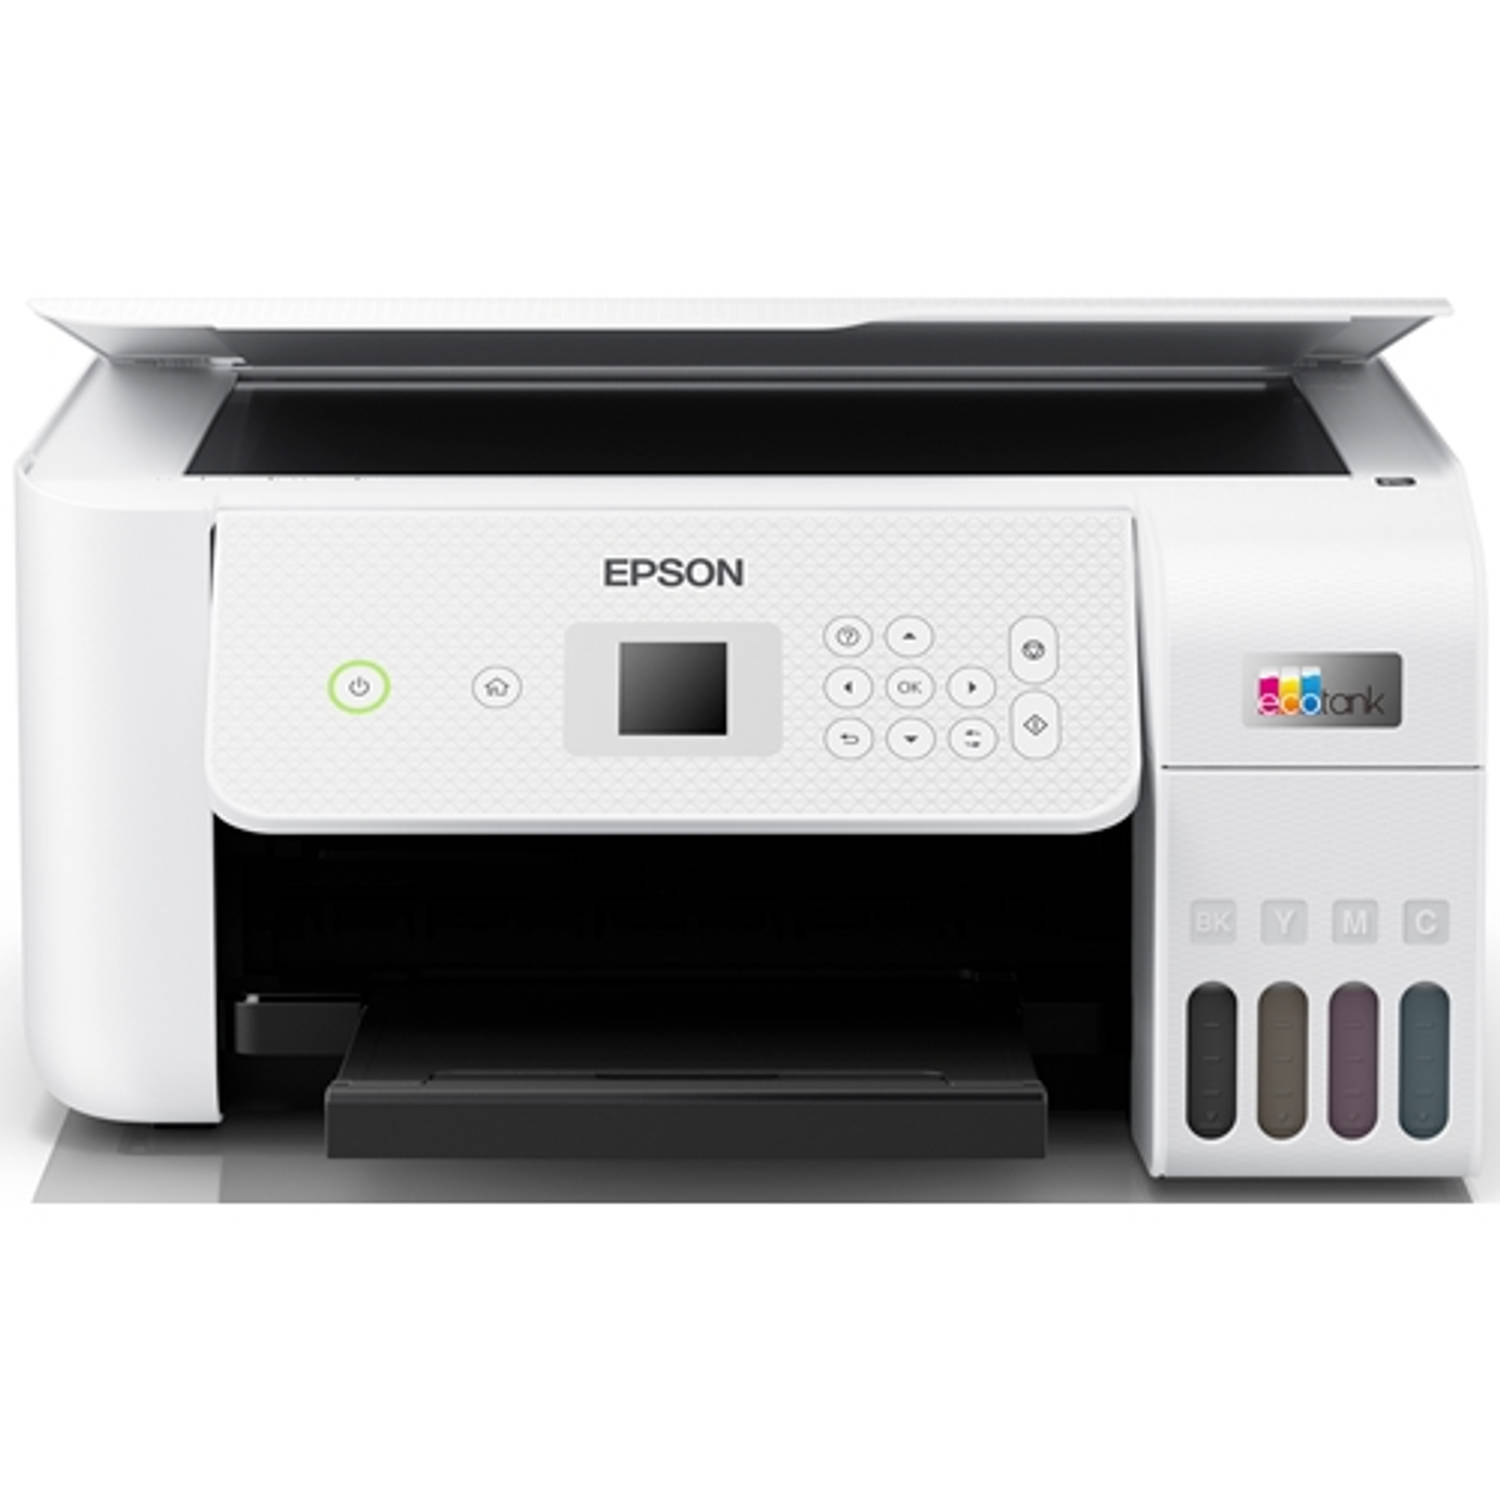 Beperkt apotheek compromis Epson all-in-one printer EcoTank ET-2826 | Blokker